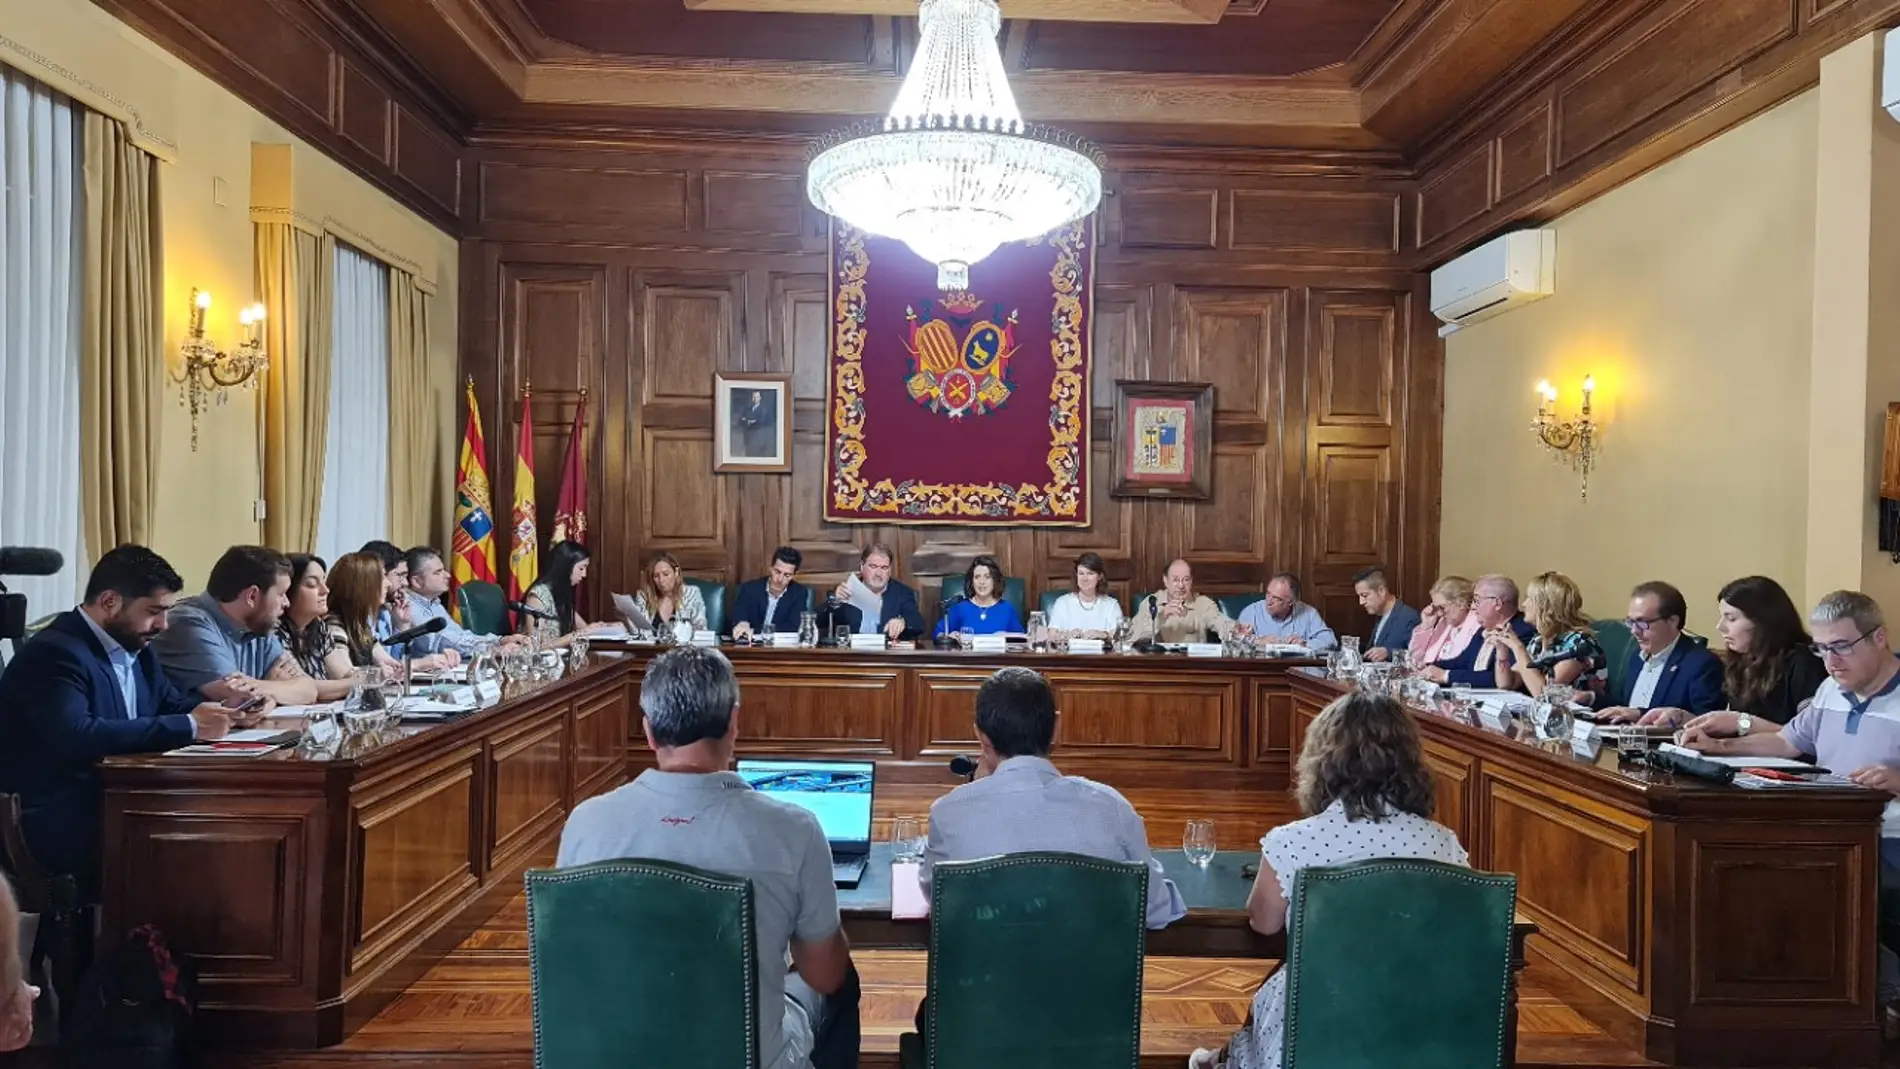 El ayuntamiento de Teruel ha celebrado hoy el primer pleno de la legislatura